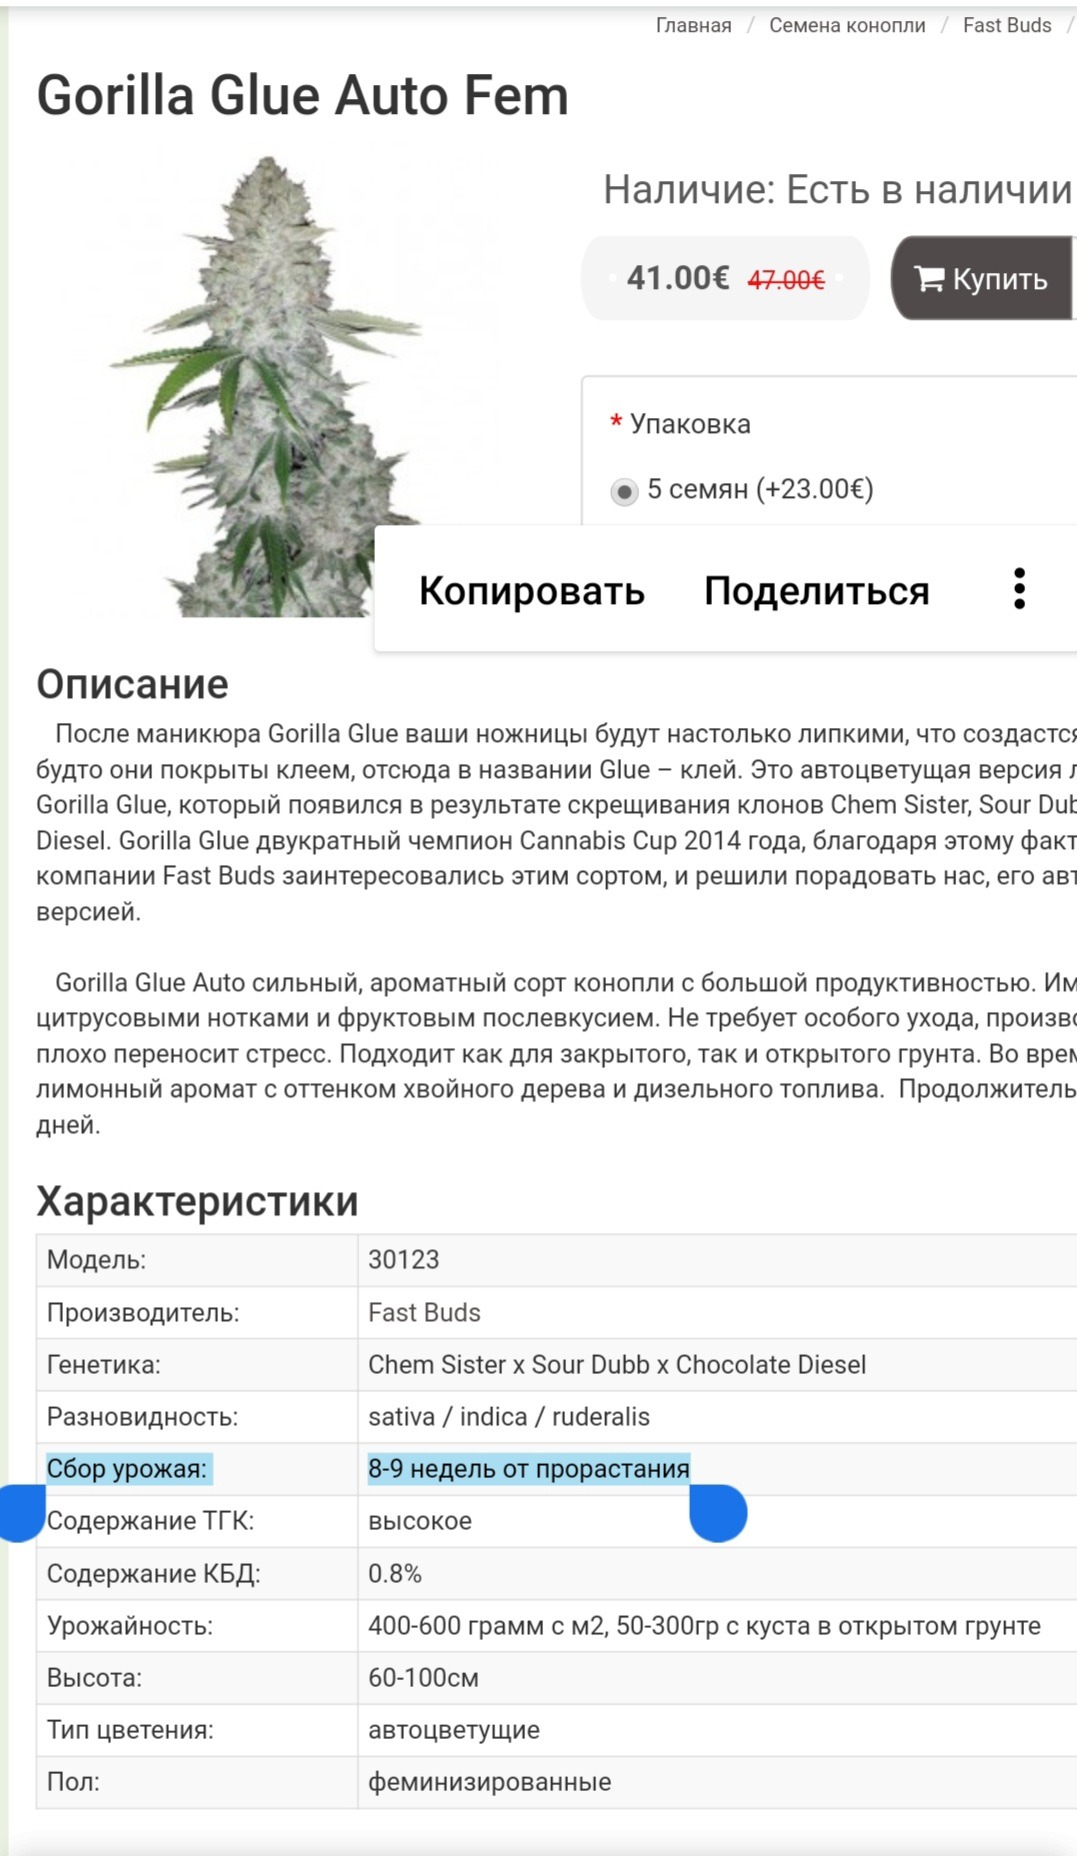 Gorilla glue auto fem купить в украине дешево